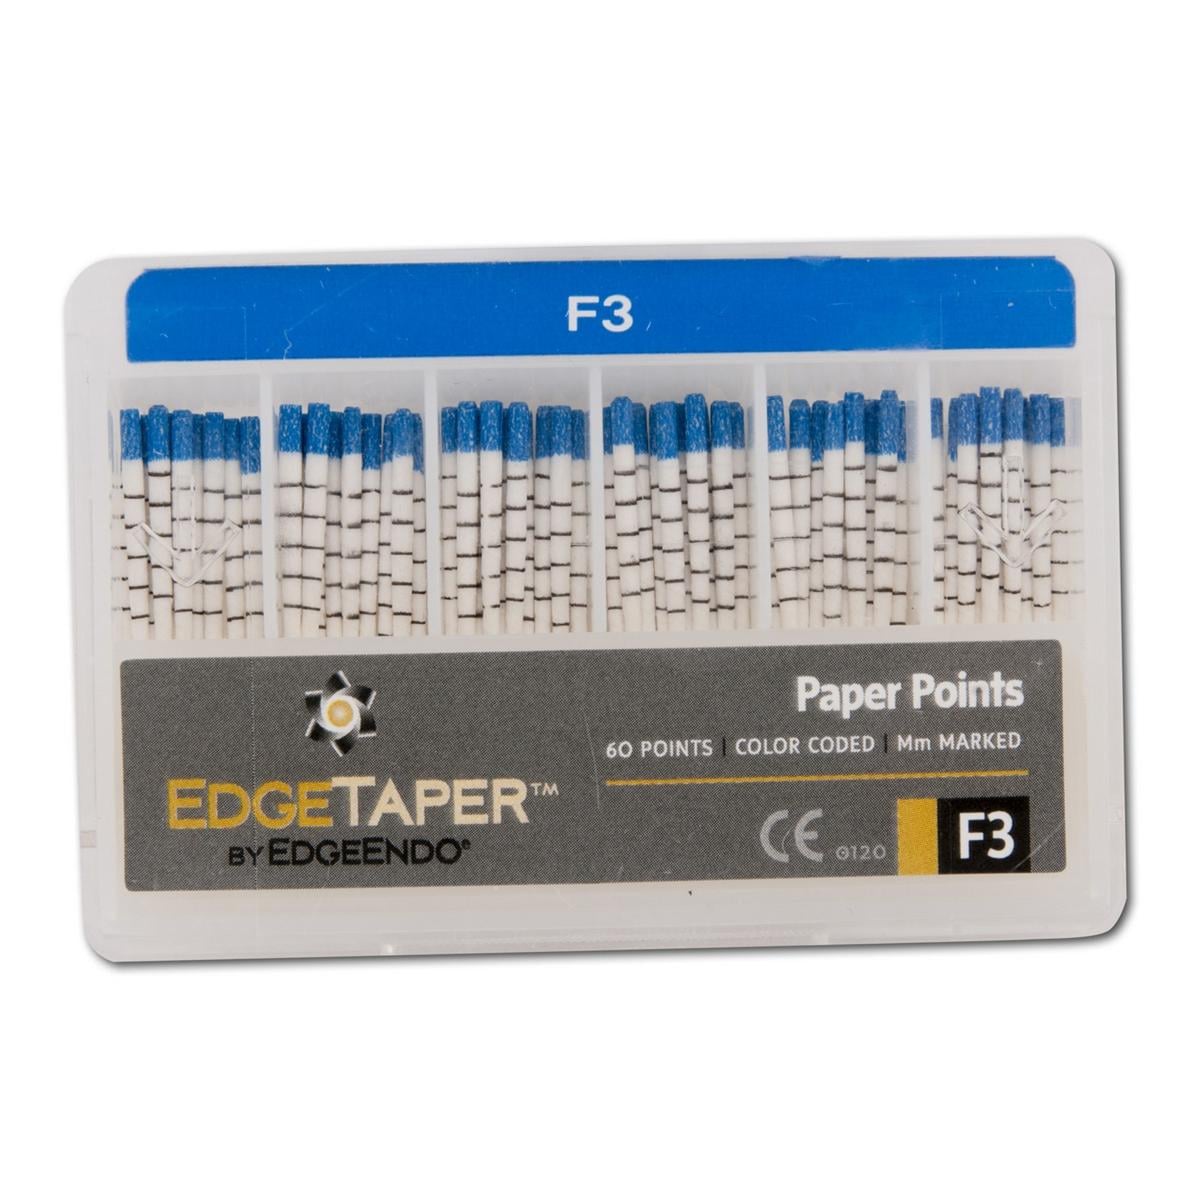 EdgeTaper Papierspitzen - Standardpackung - Größe F3, Packung 60 Stück